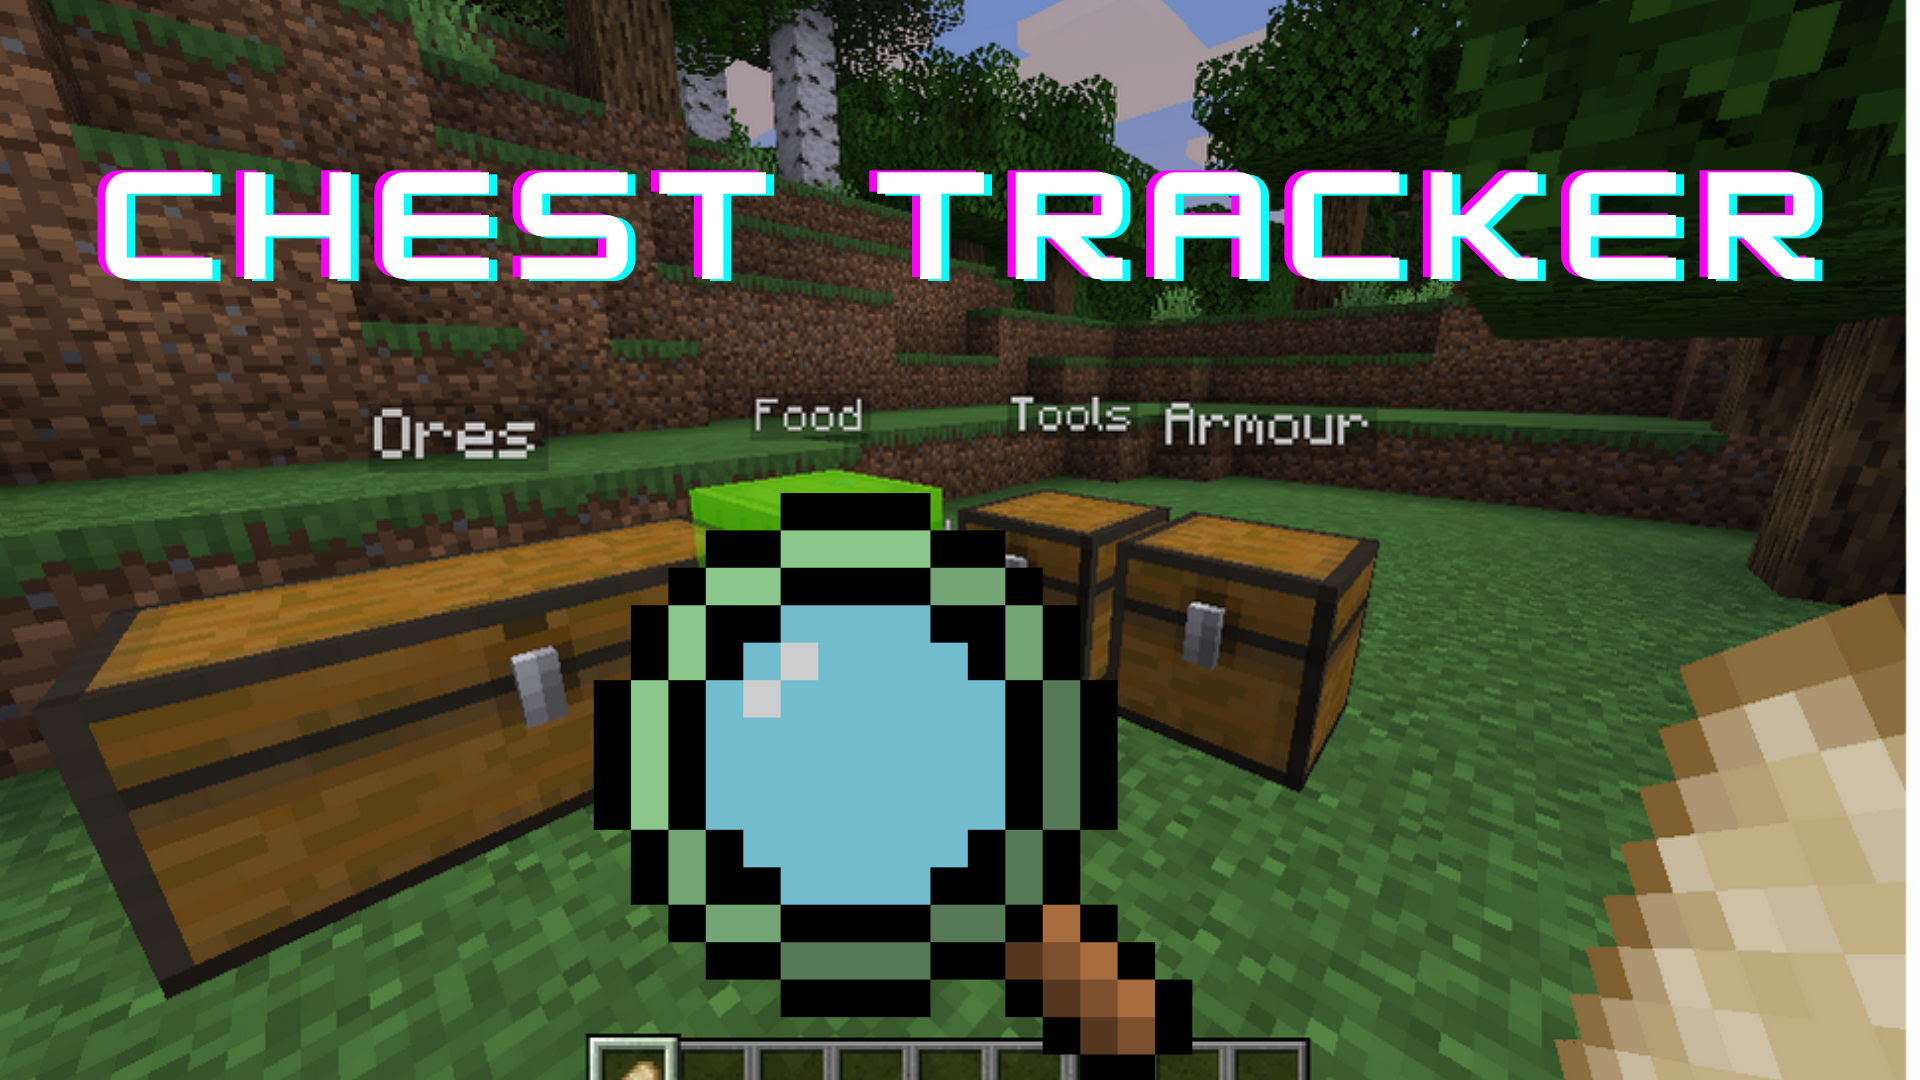 Chest Tracker Mod: Một trong những hệ thống cũ nhất trong Minecraft được cải tiến